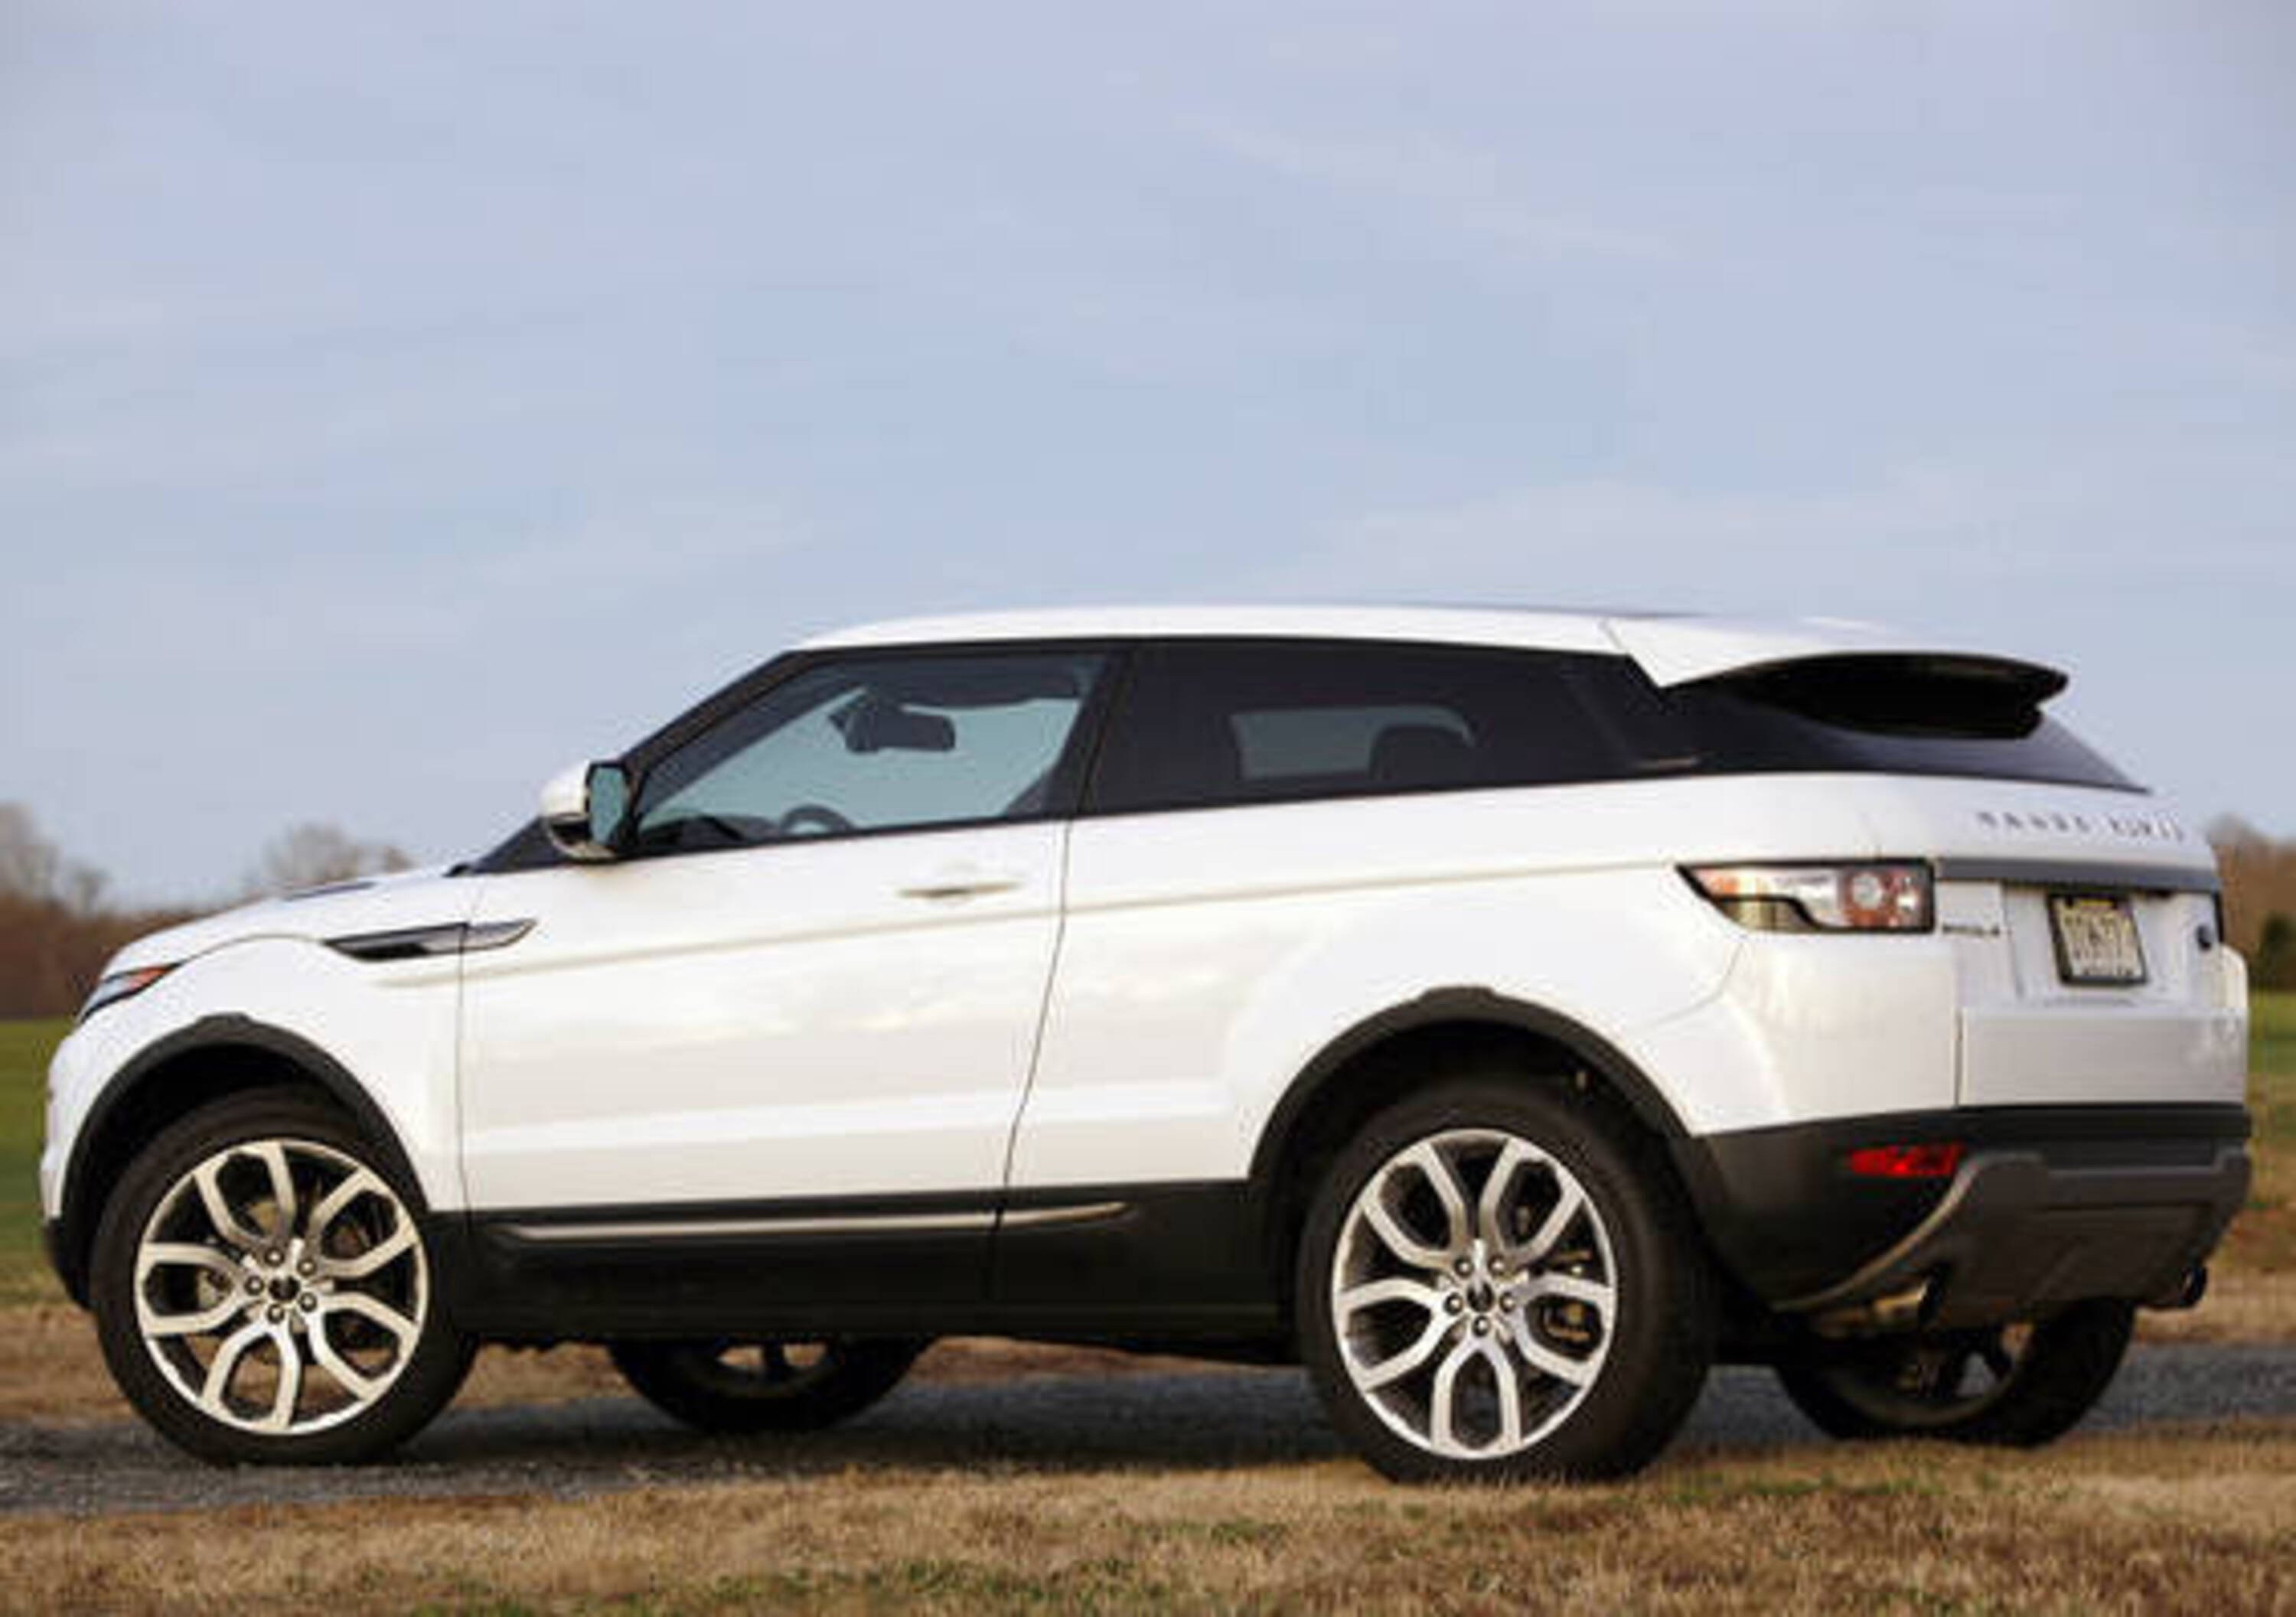 Range Rover Evoque: in arrivo una versione sportiva?